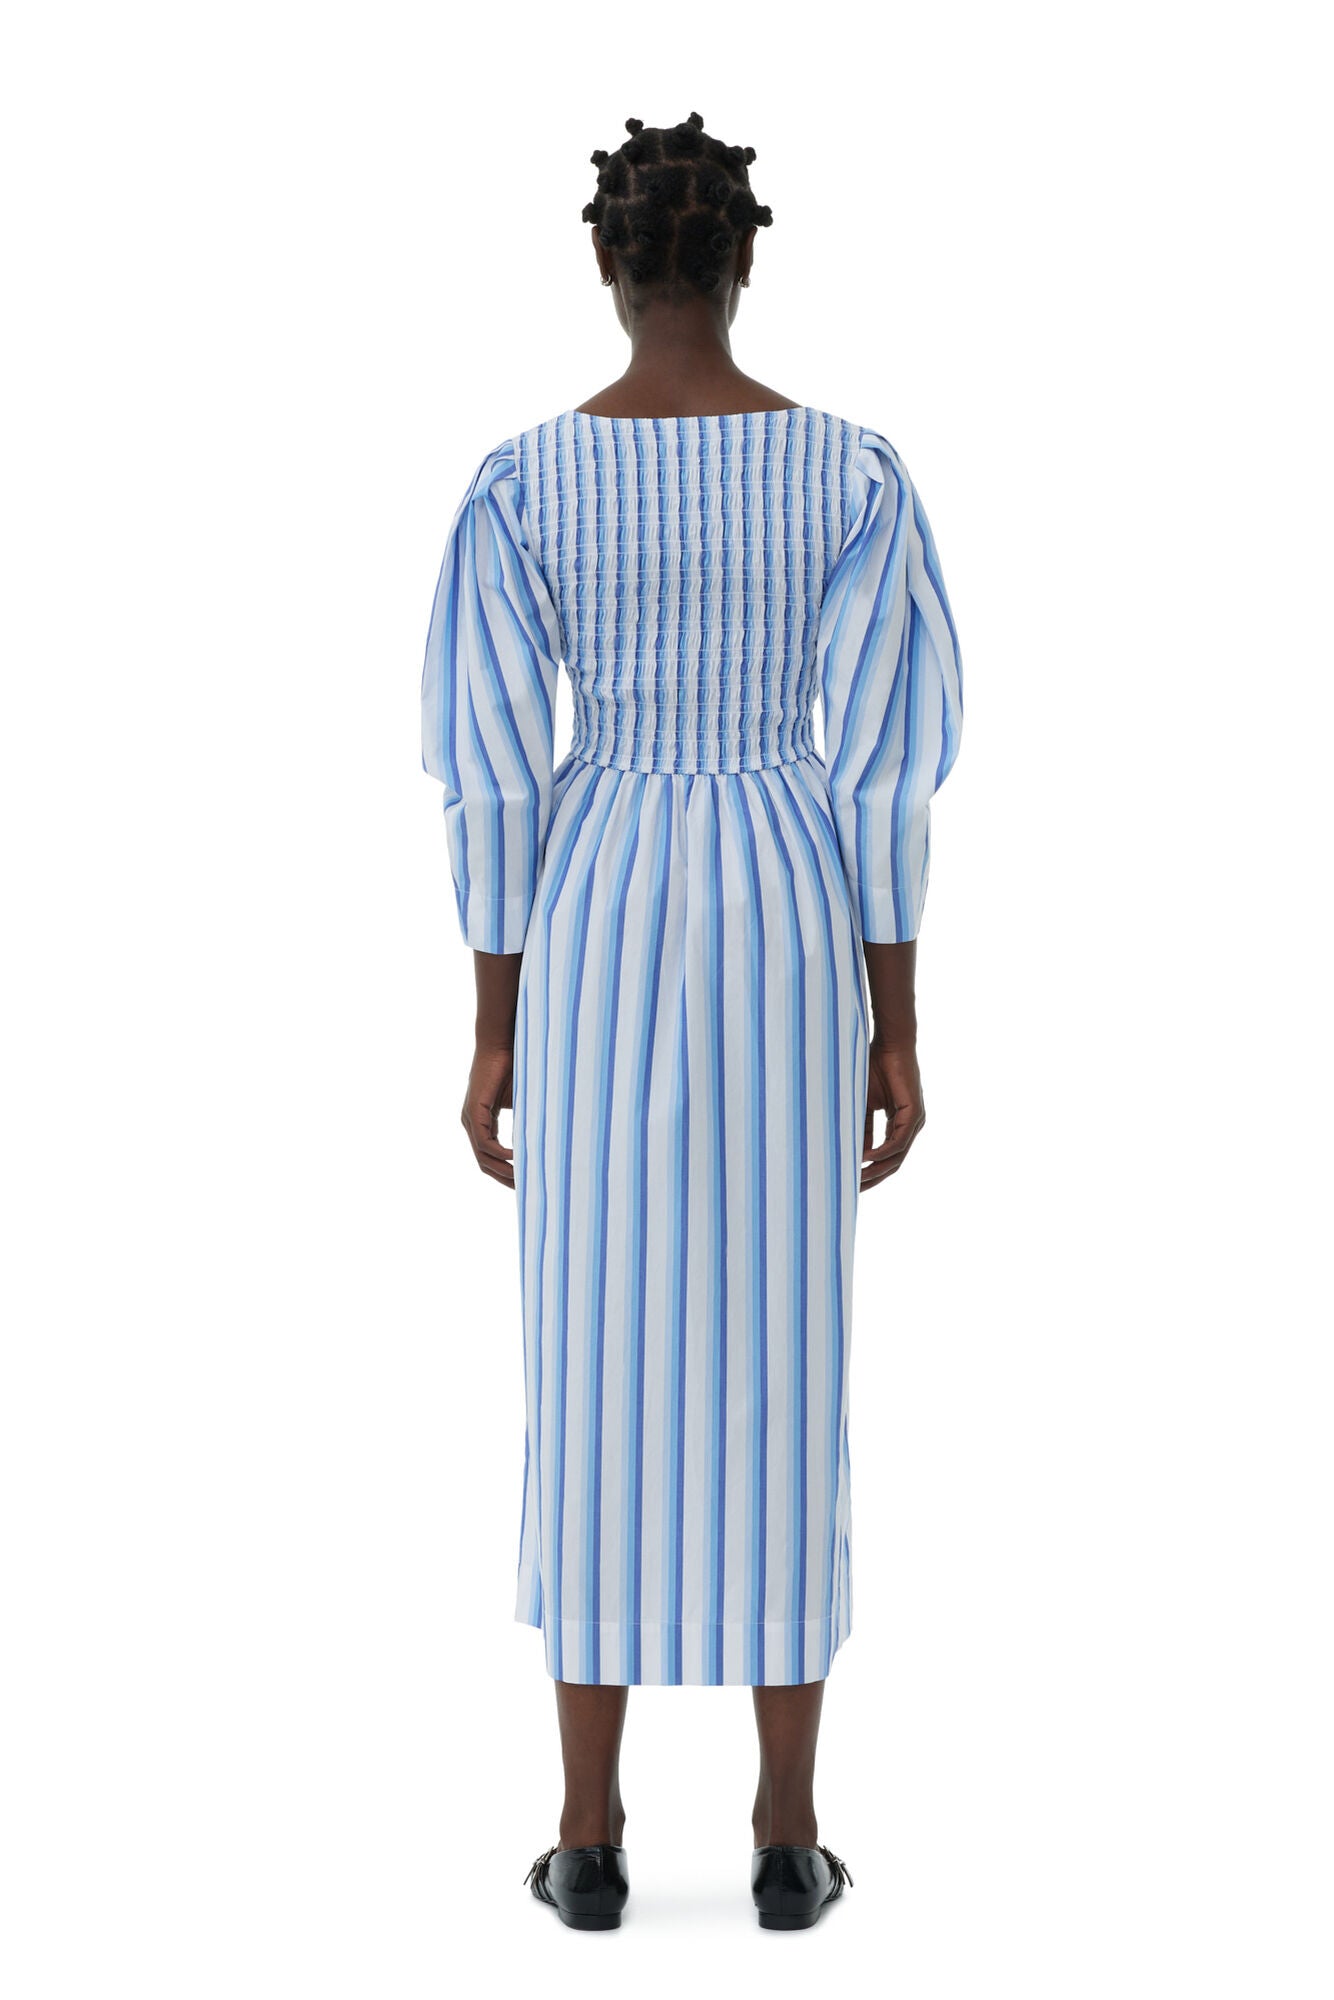 Stripe Cotton Open-neck Smock Long Dress, white-blue